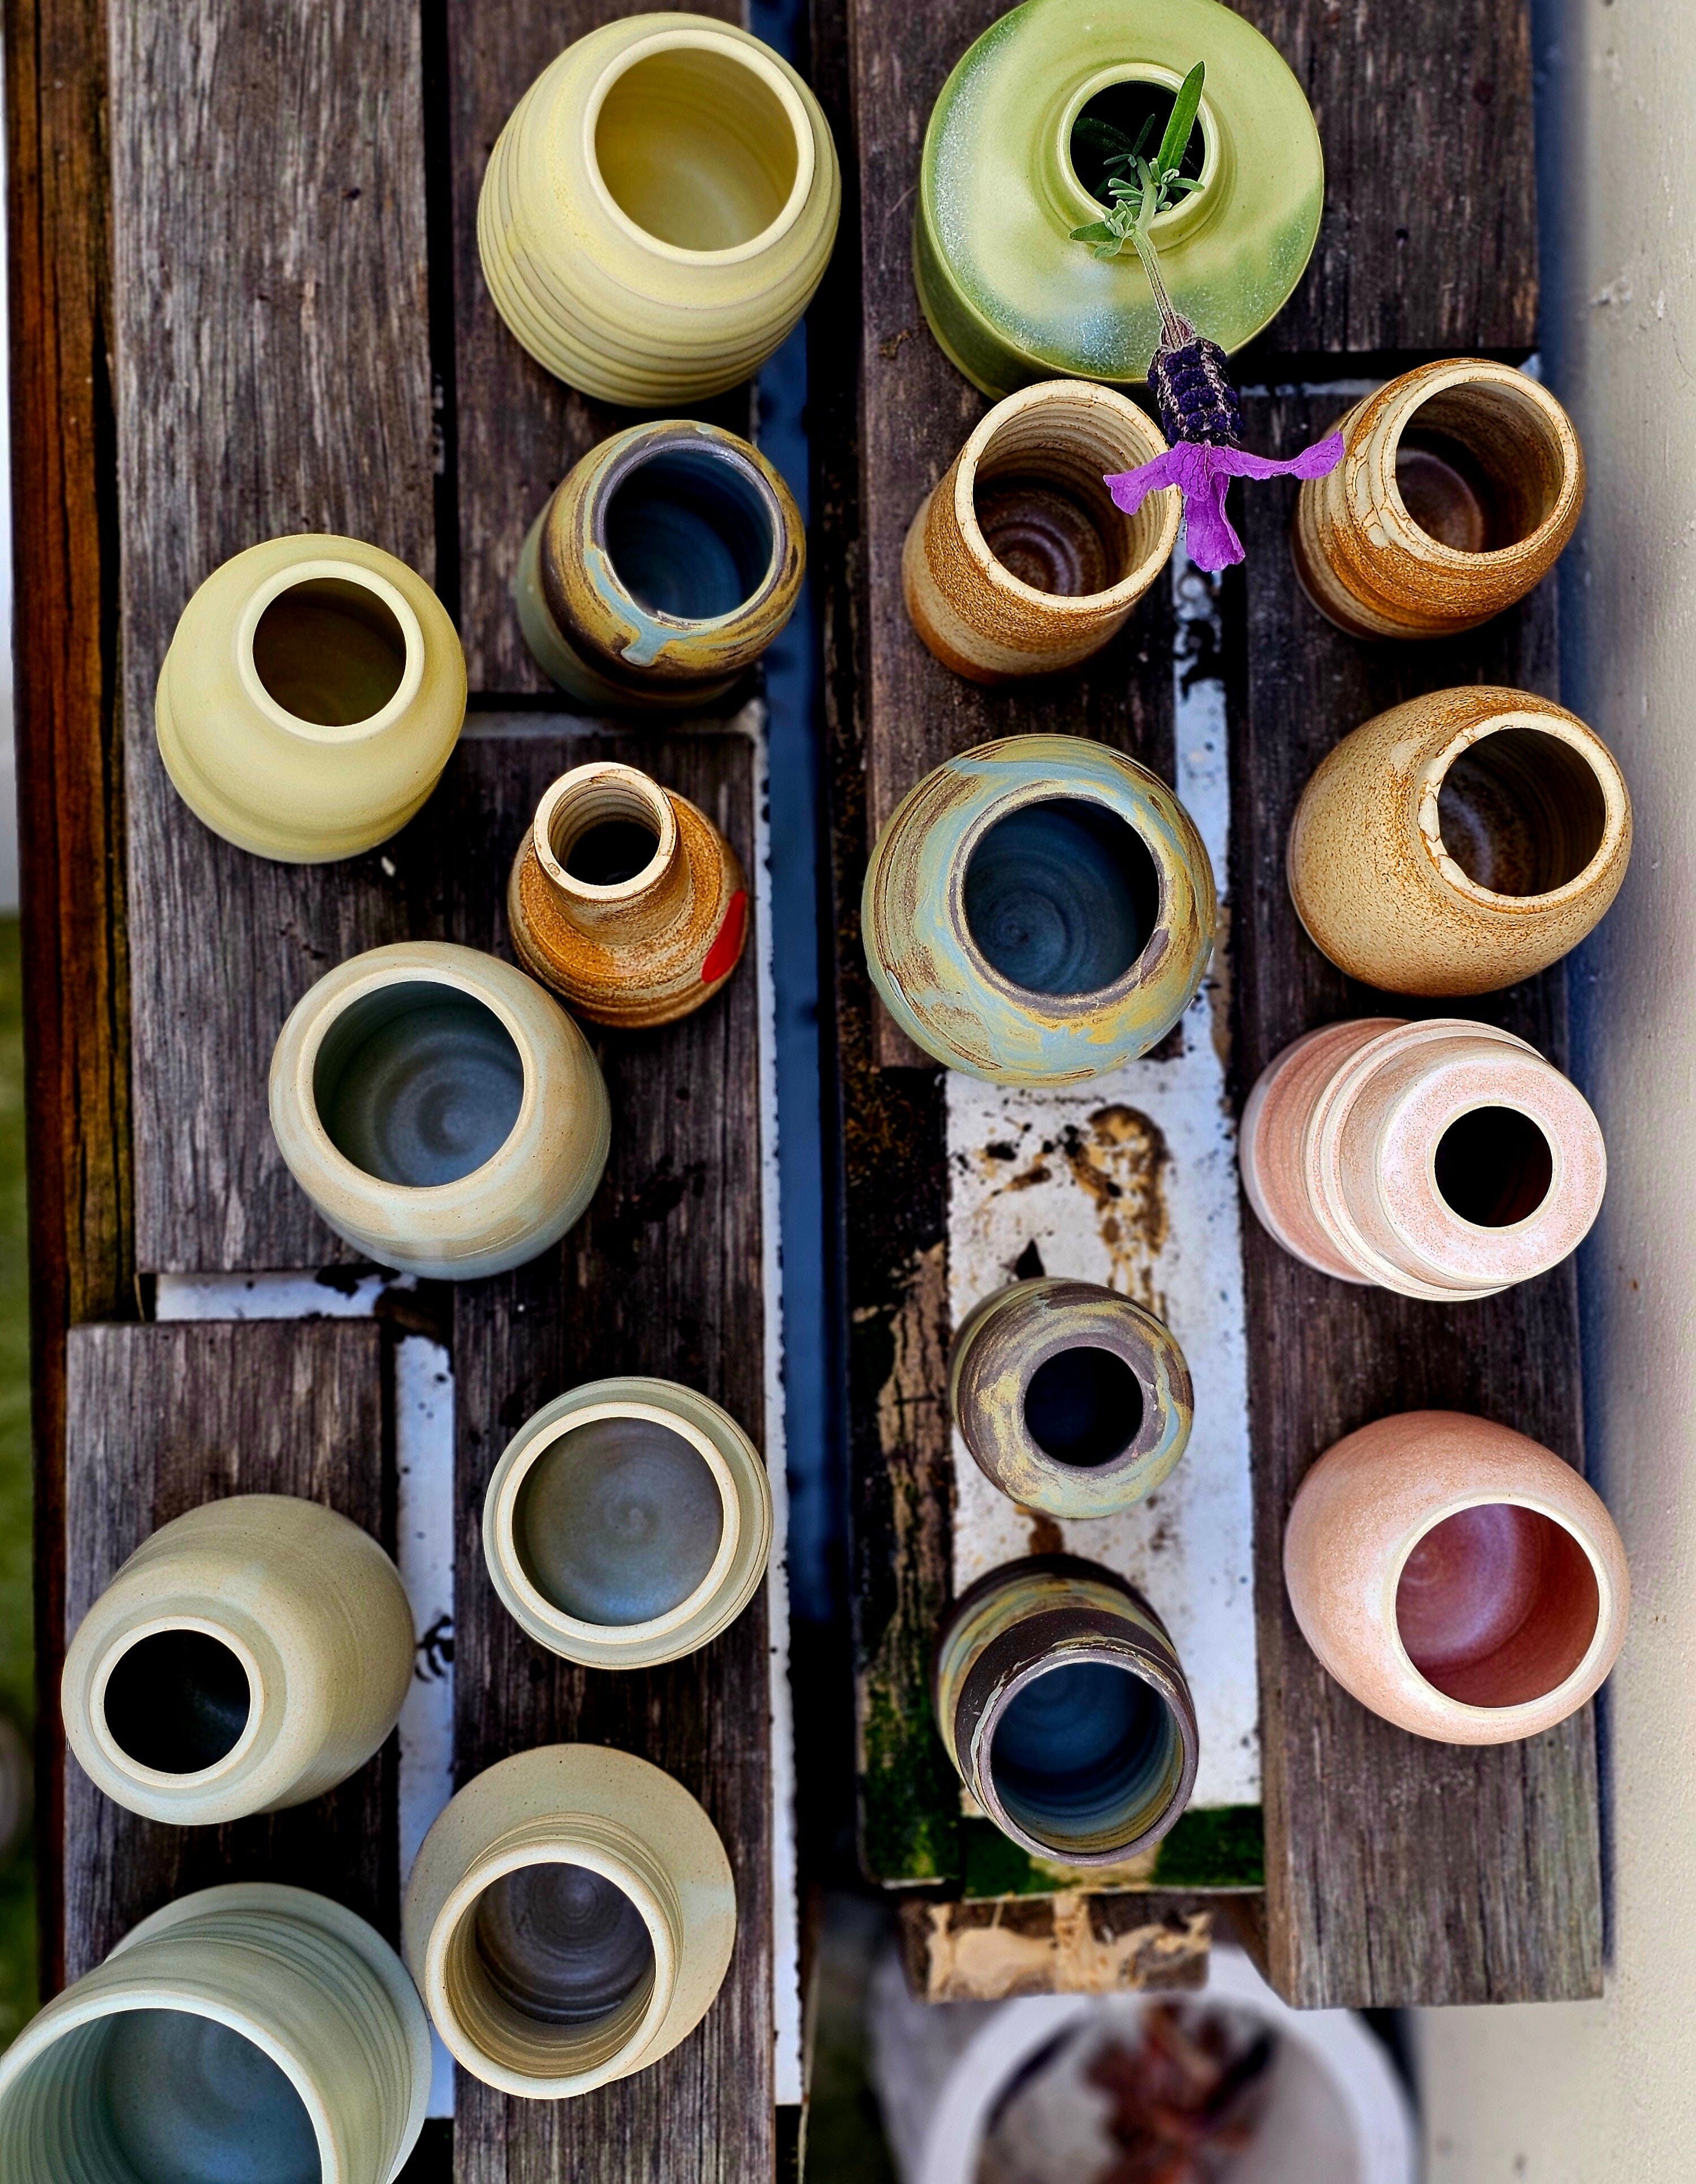 Handmade Ceramic Vases - The Little Mud Room Vase The Little Mud Room 